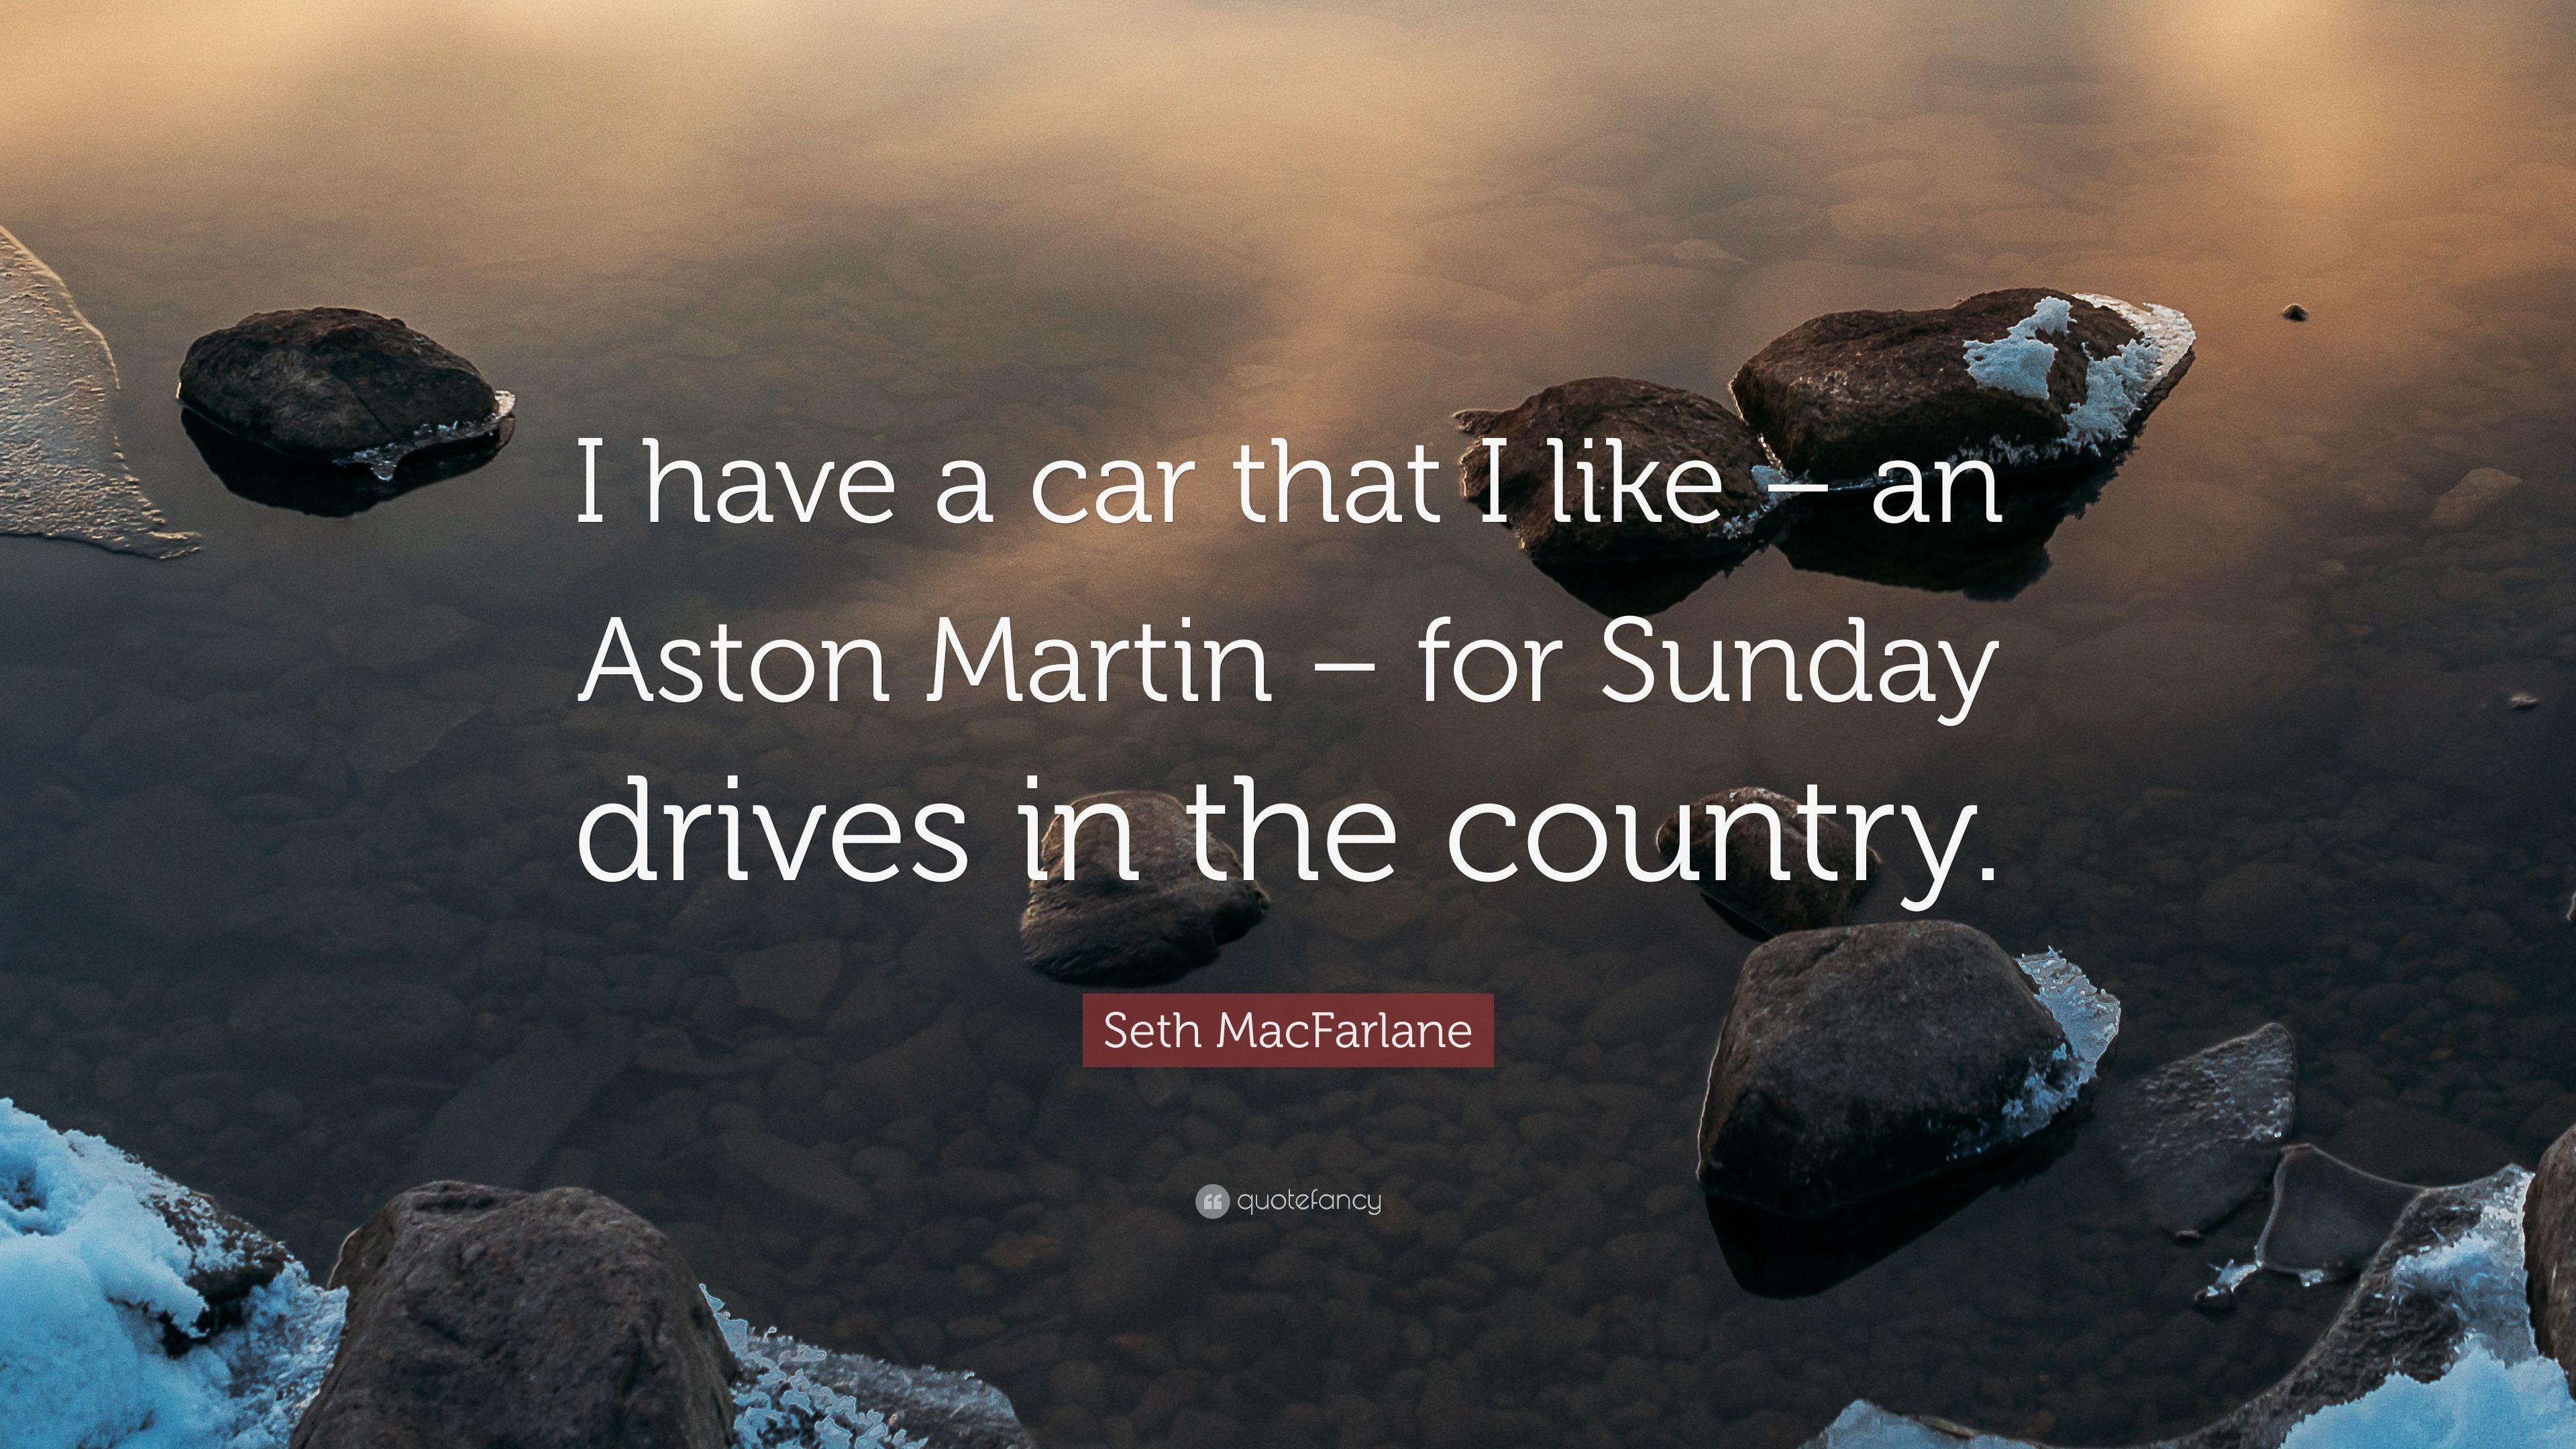 Seth MacFarlane Quote: “I have a car that I like